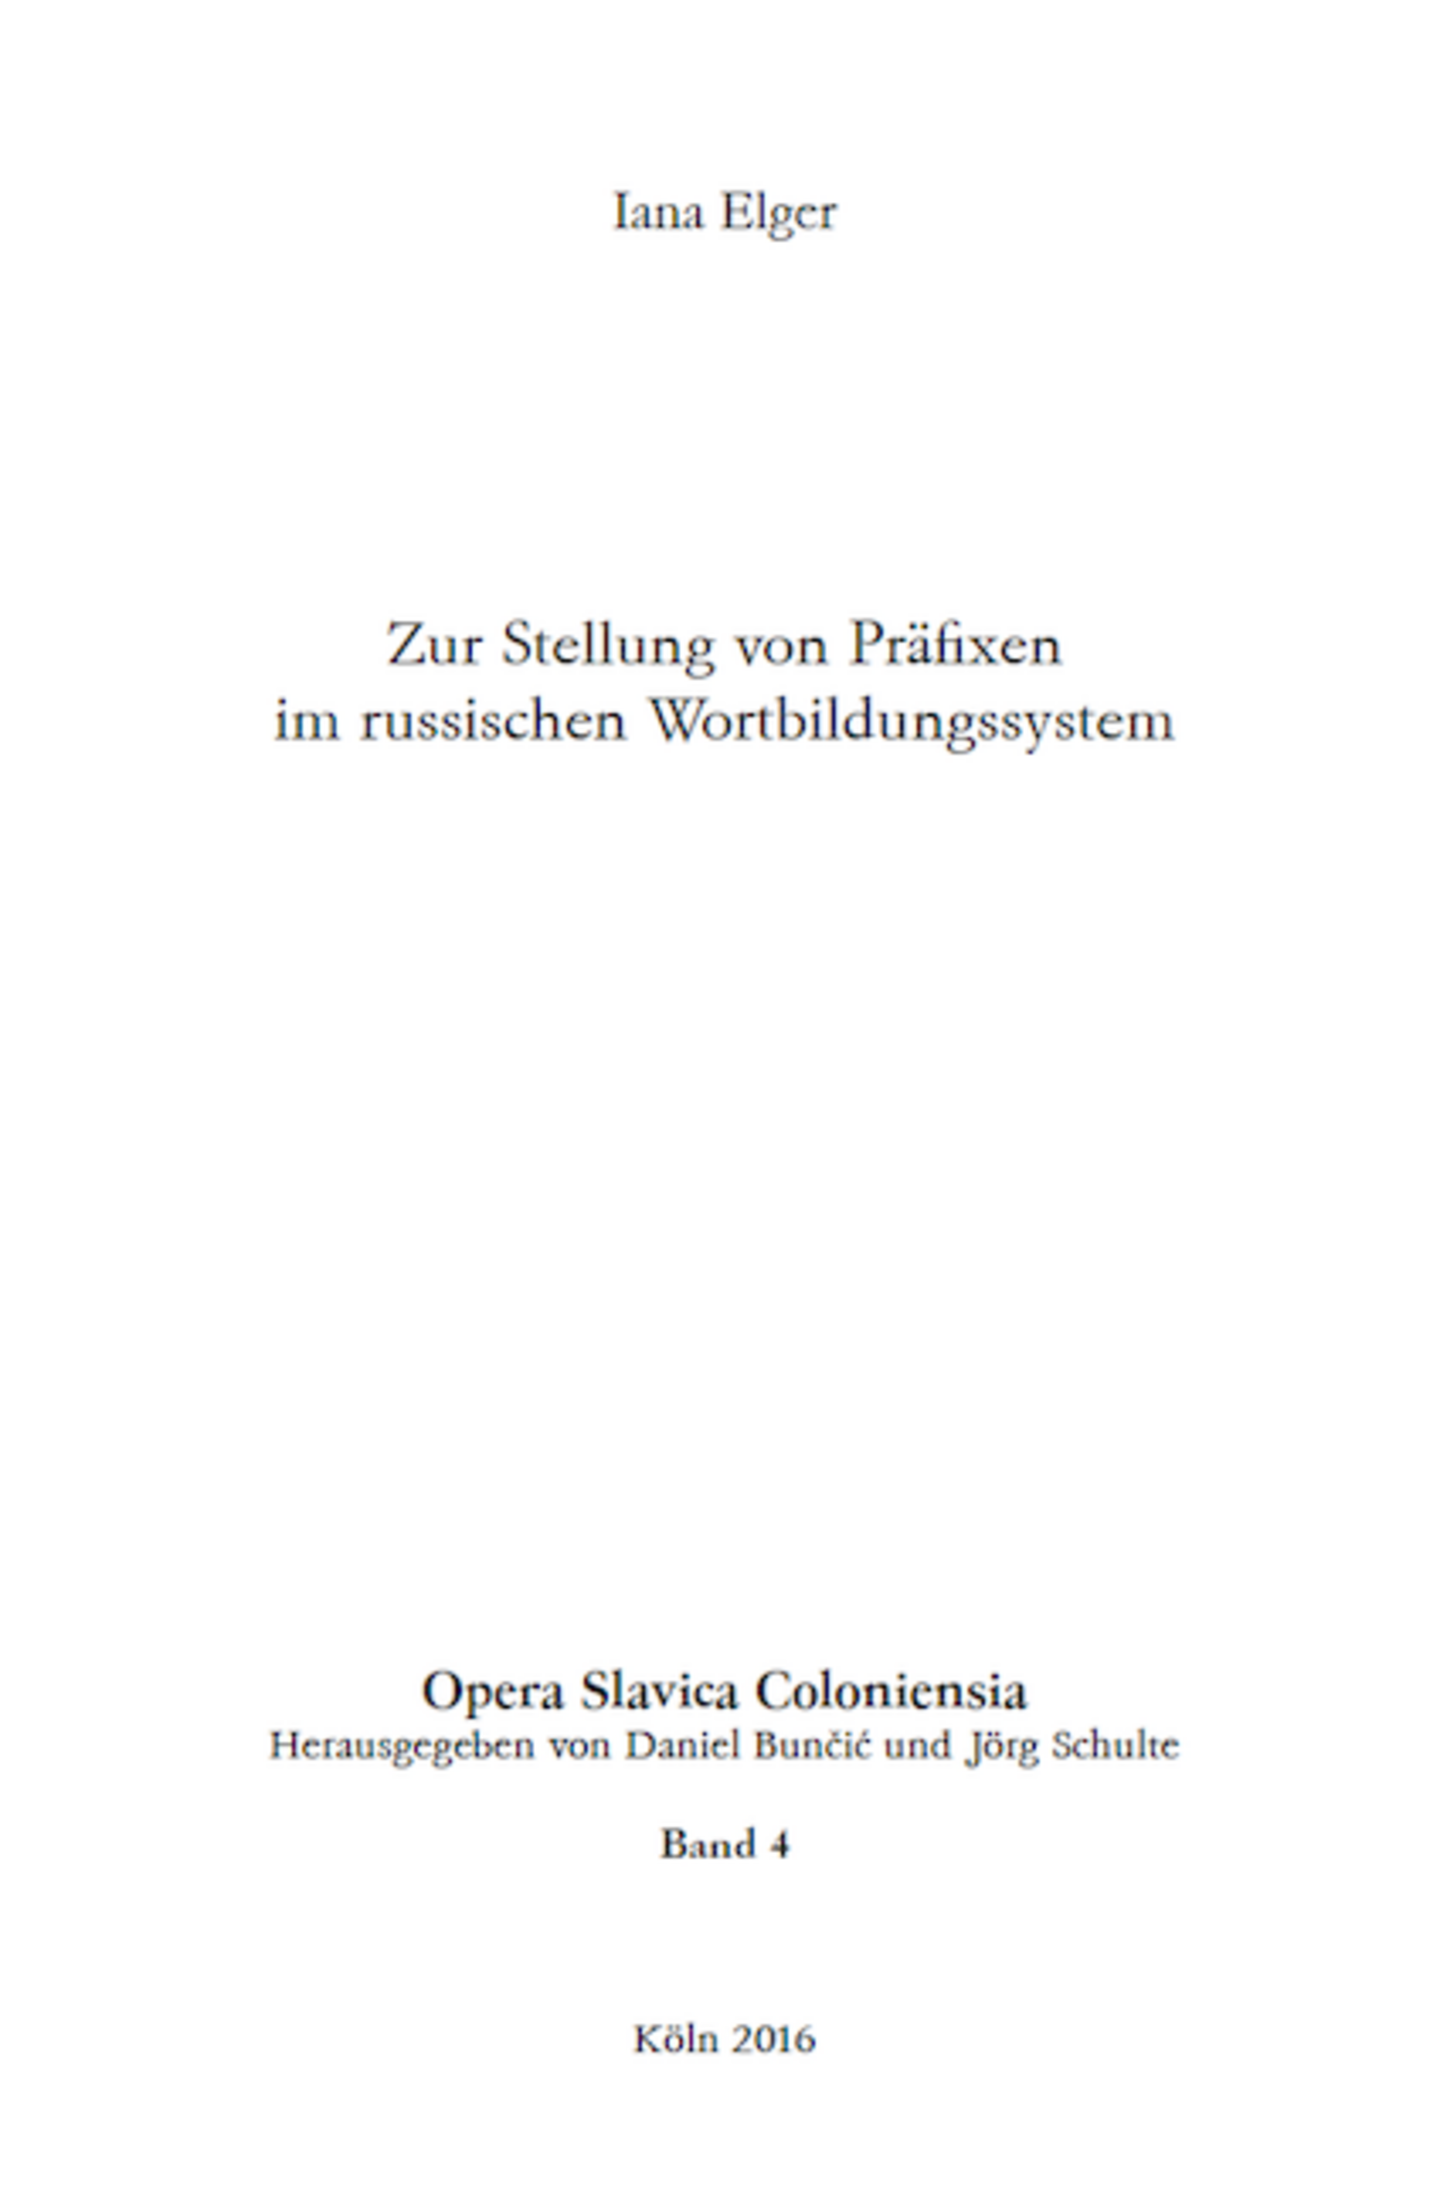 Opera Slavica Coloniensia, Bd. 4: Iana Elger (2016) Zur Stellung von Präfixen im russischen Wortbildungssystem